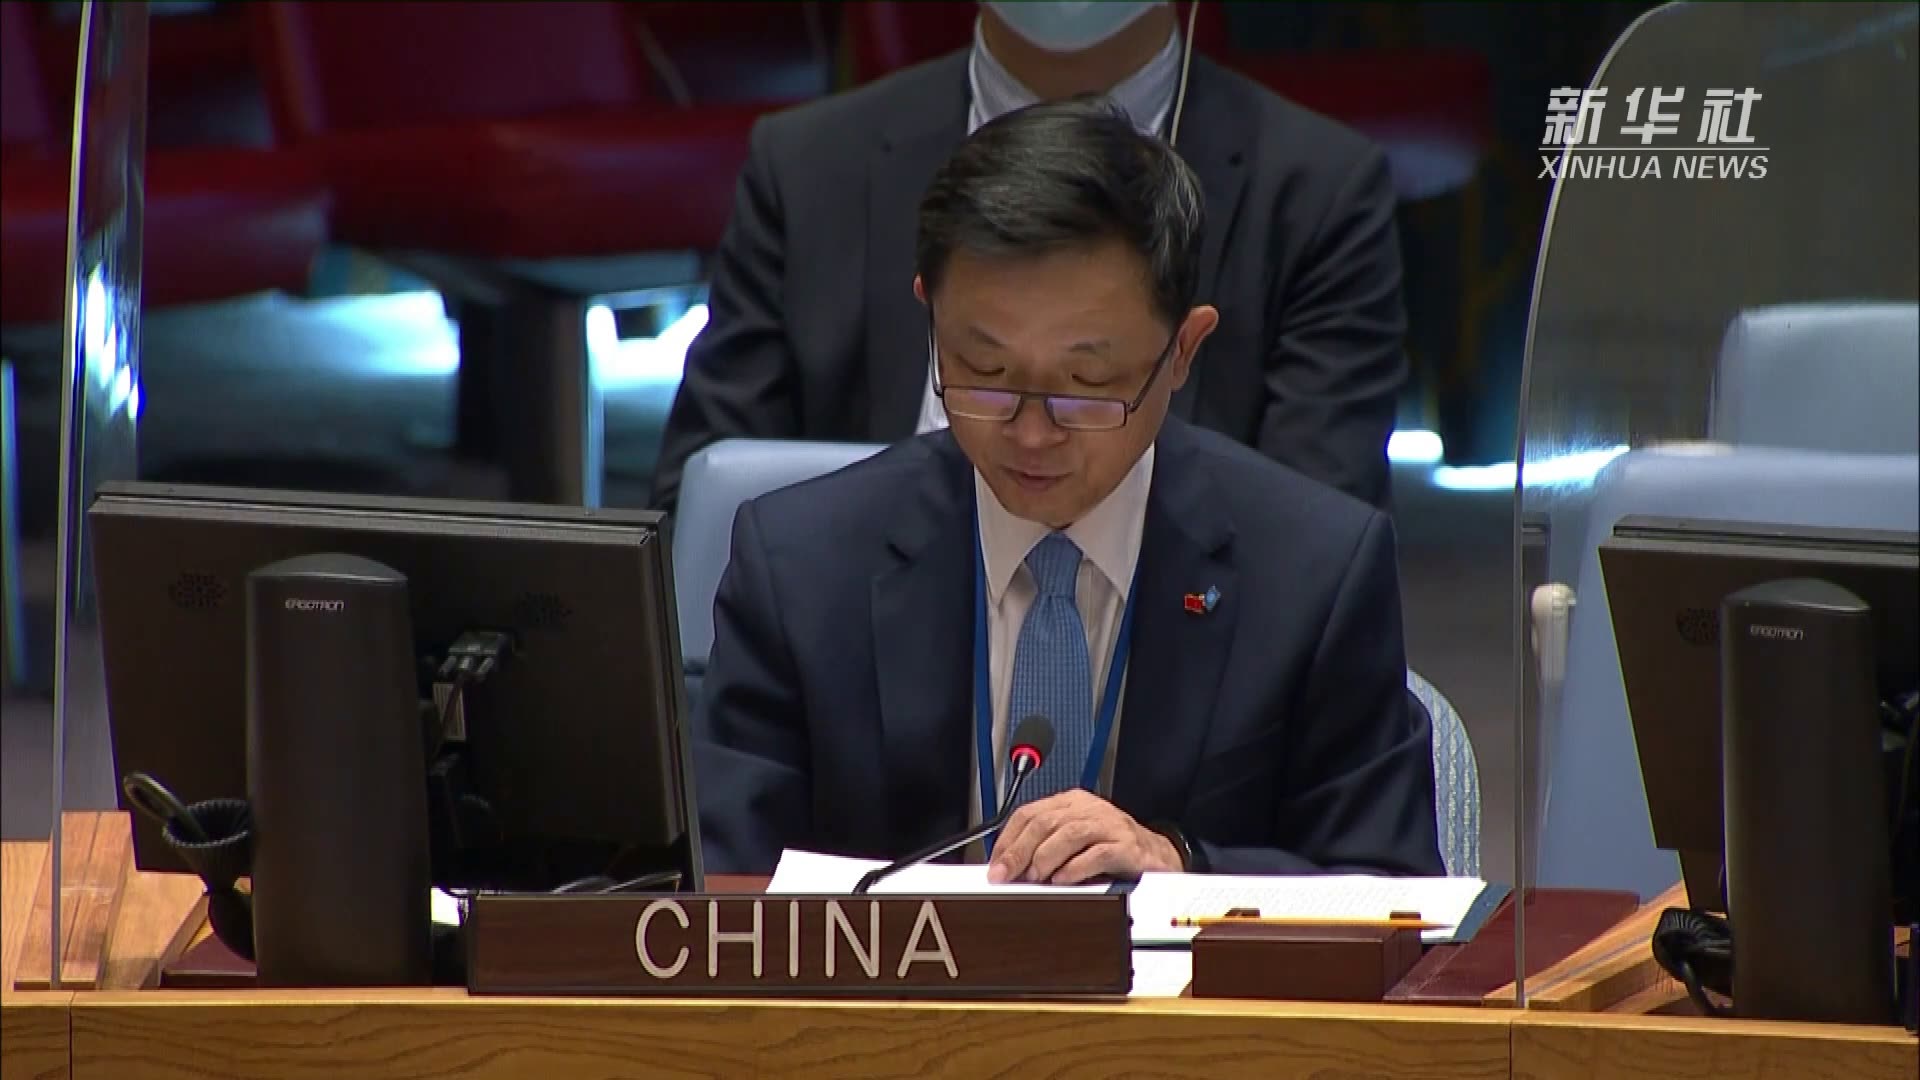 中国常驻联合国副代表呼吁国际社会支持西非和萨赫勒地区维护和平稳定